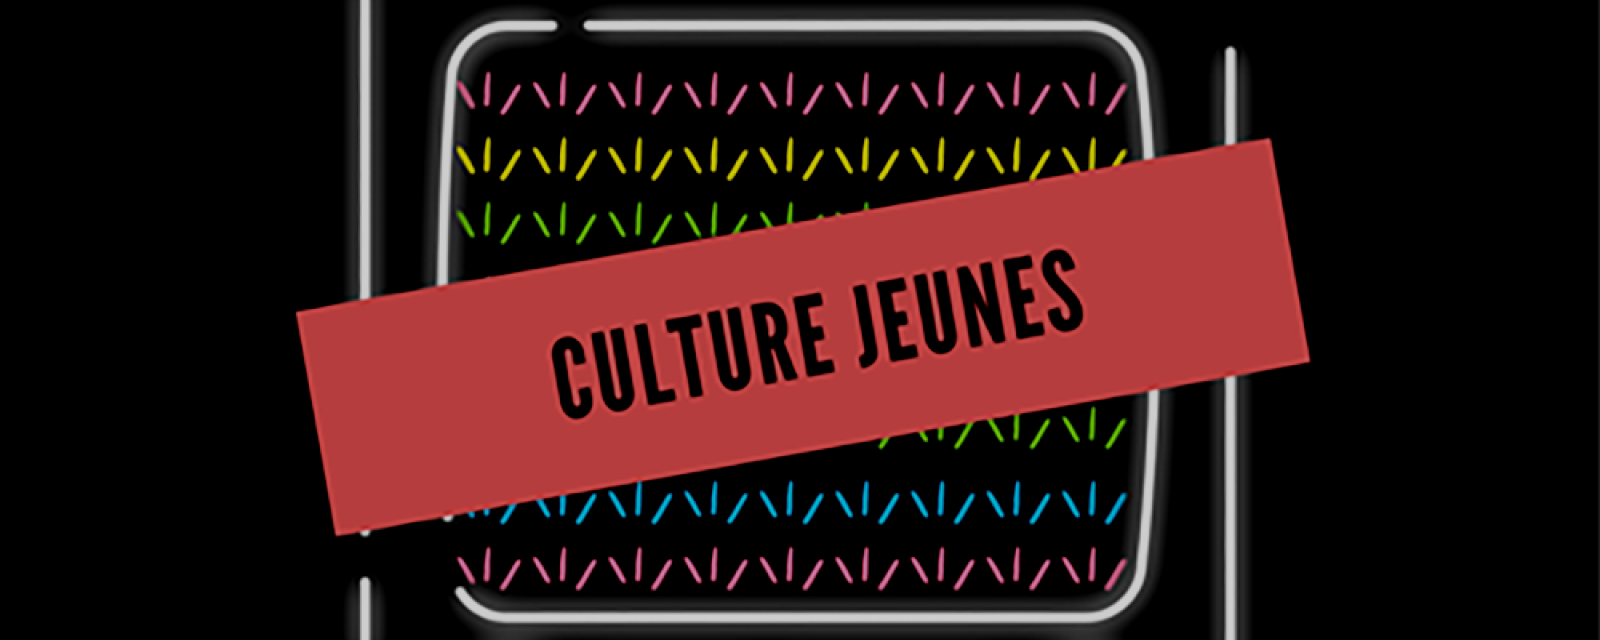 culture_jeunes